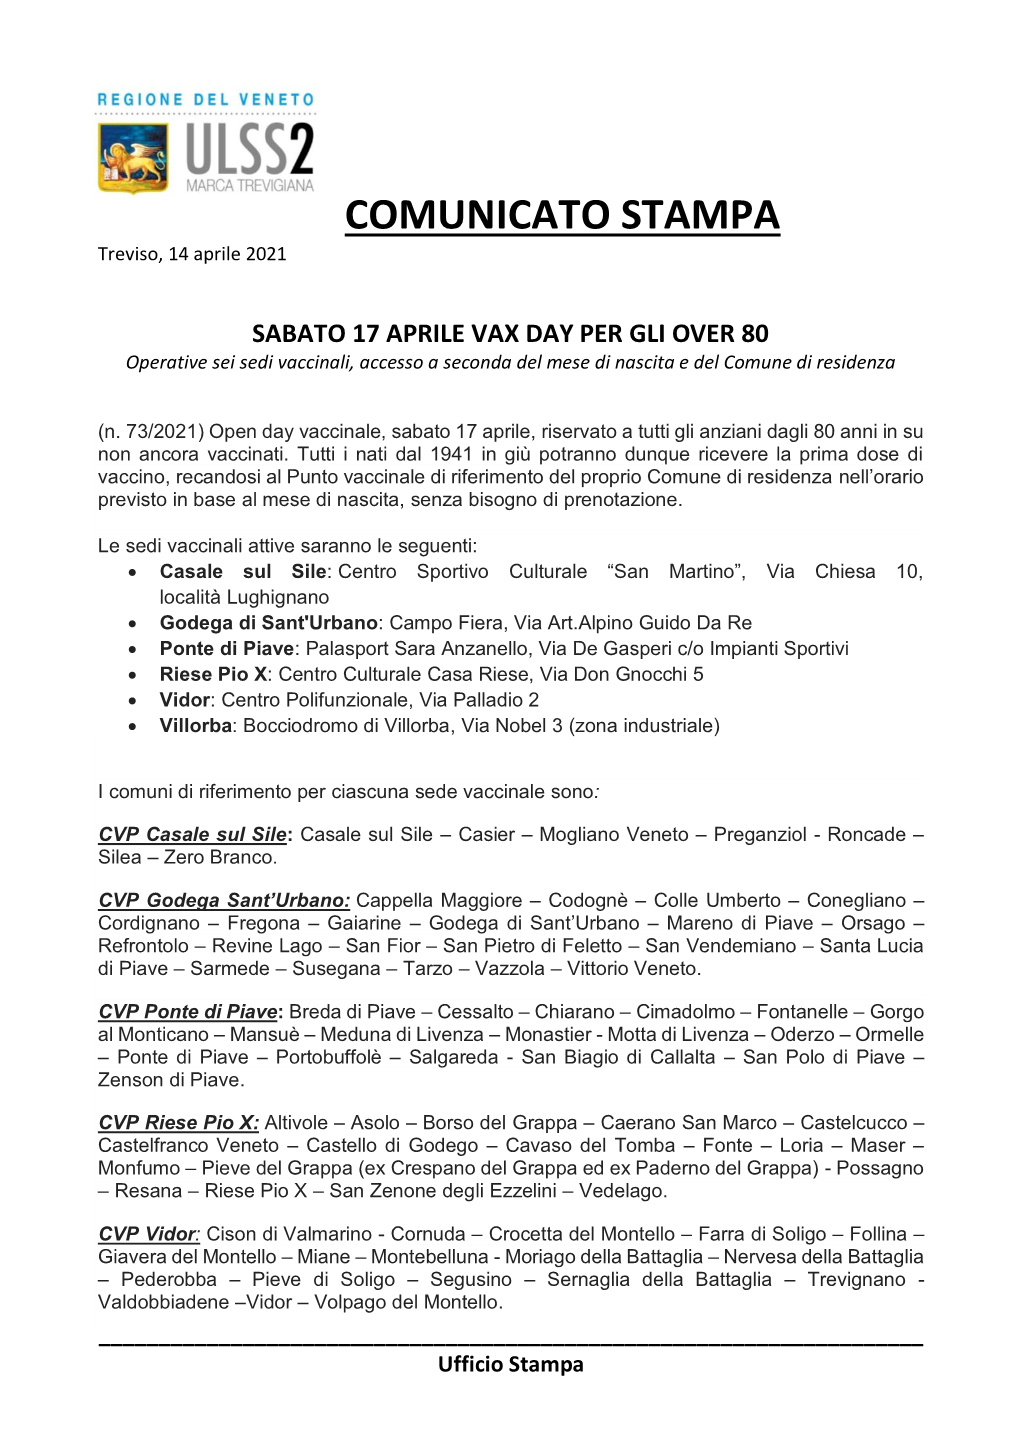 COMUNICATO STAMPA Treviso, 14 Aprile 2021